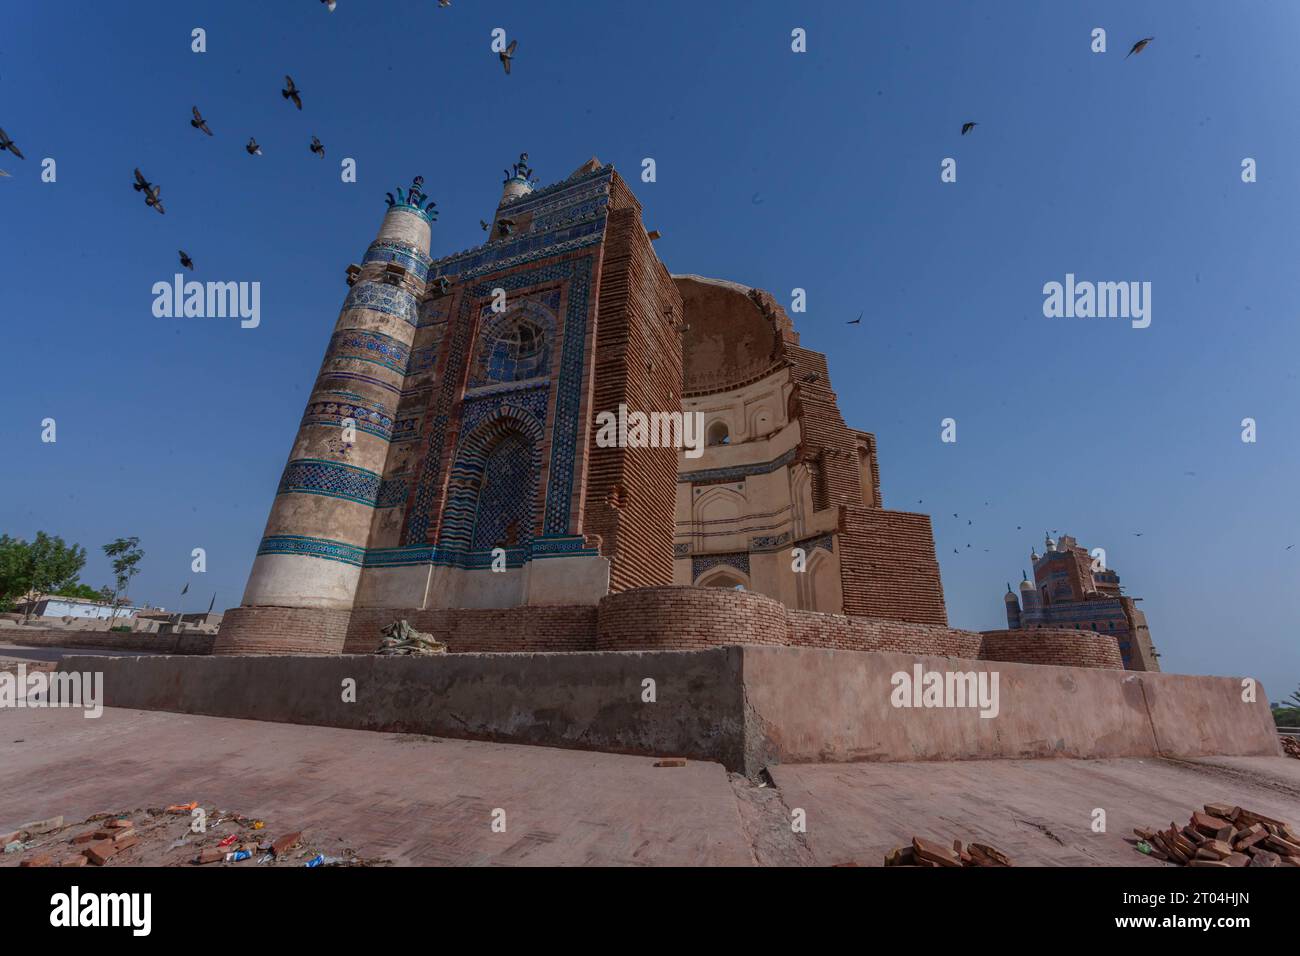 Majestueux UCH Sharif : un aperçu de l'histoire. La vue panoramique de UCH Sharif, avec ses trésors architecturaux parsemant gracieusement la ligne d'horizon. Banque D'Images